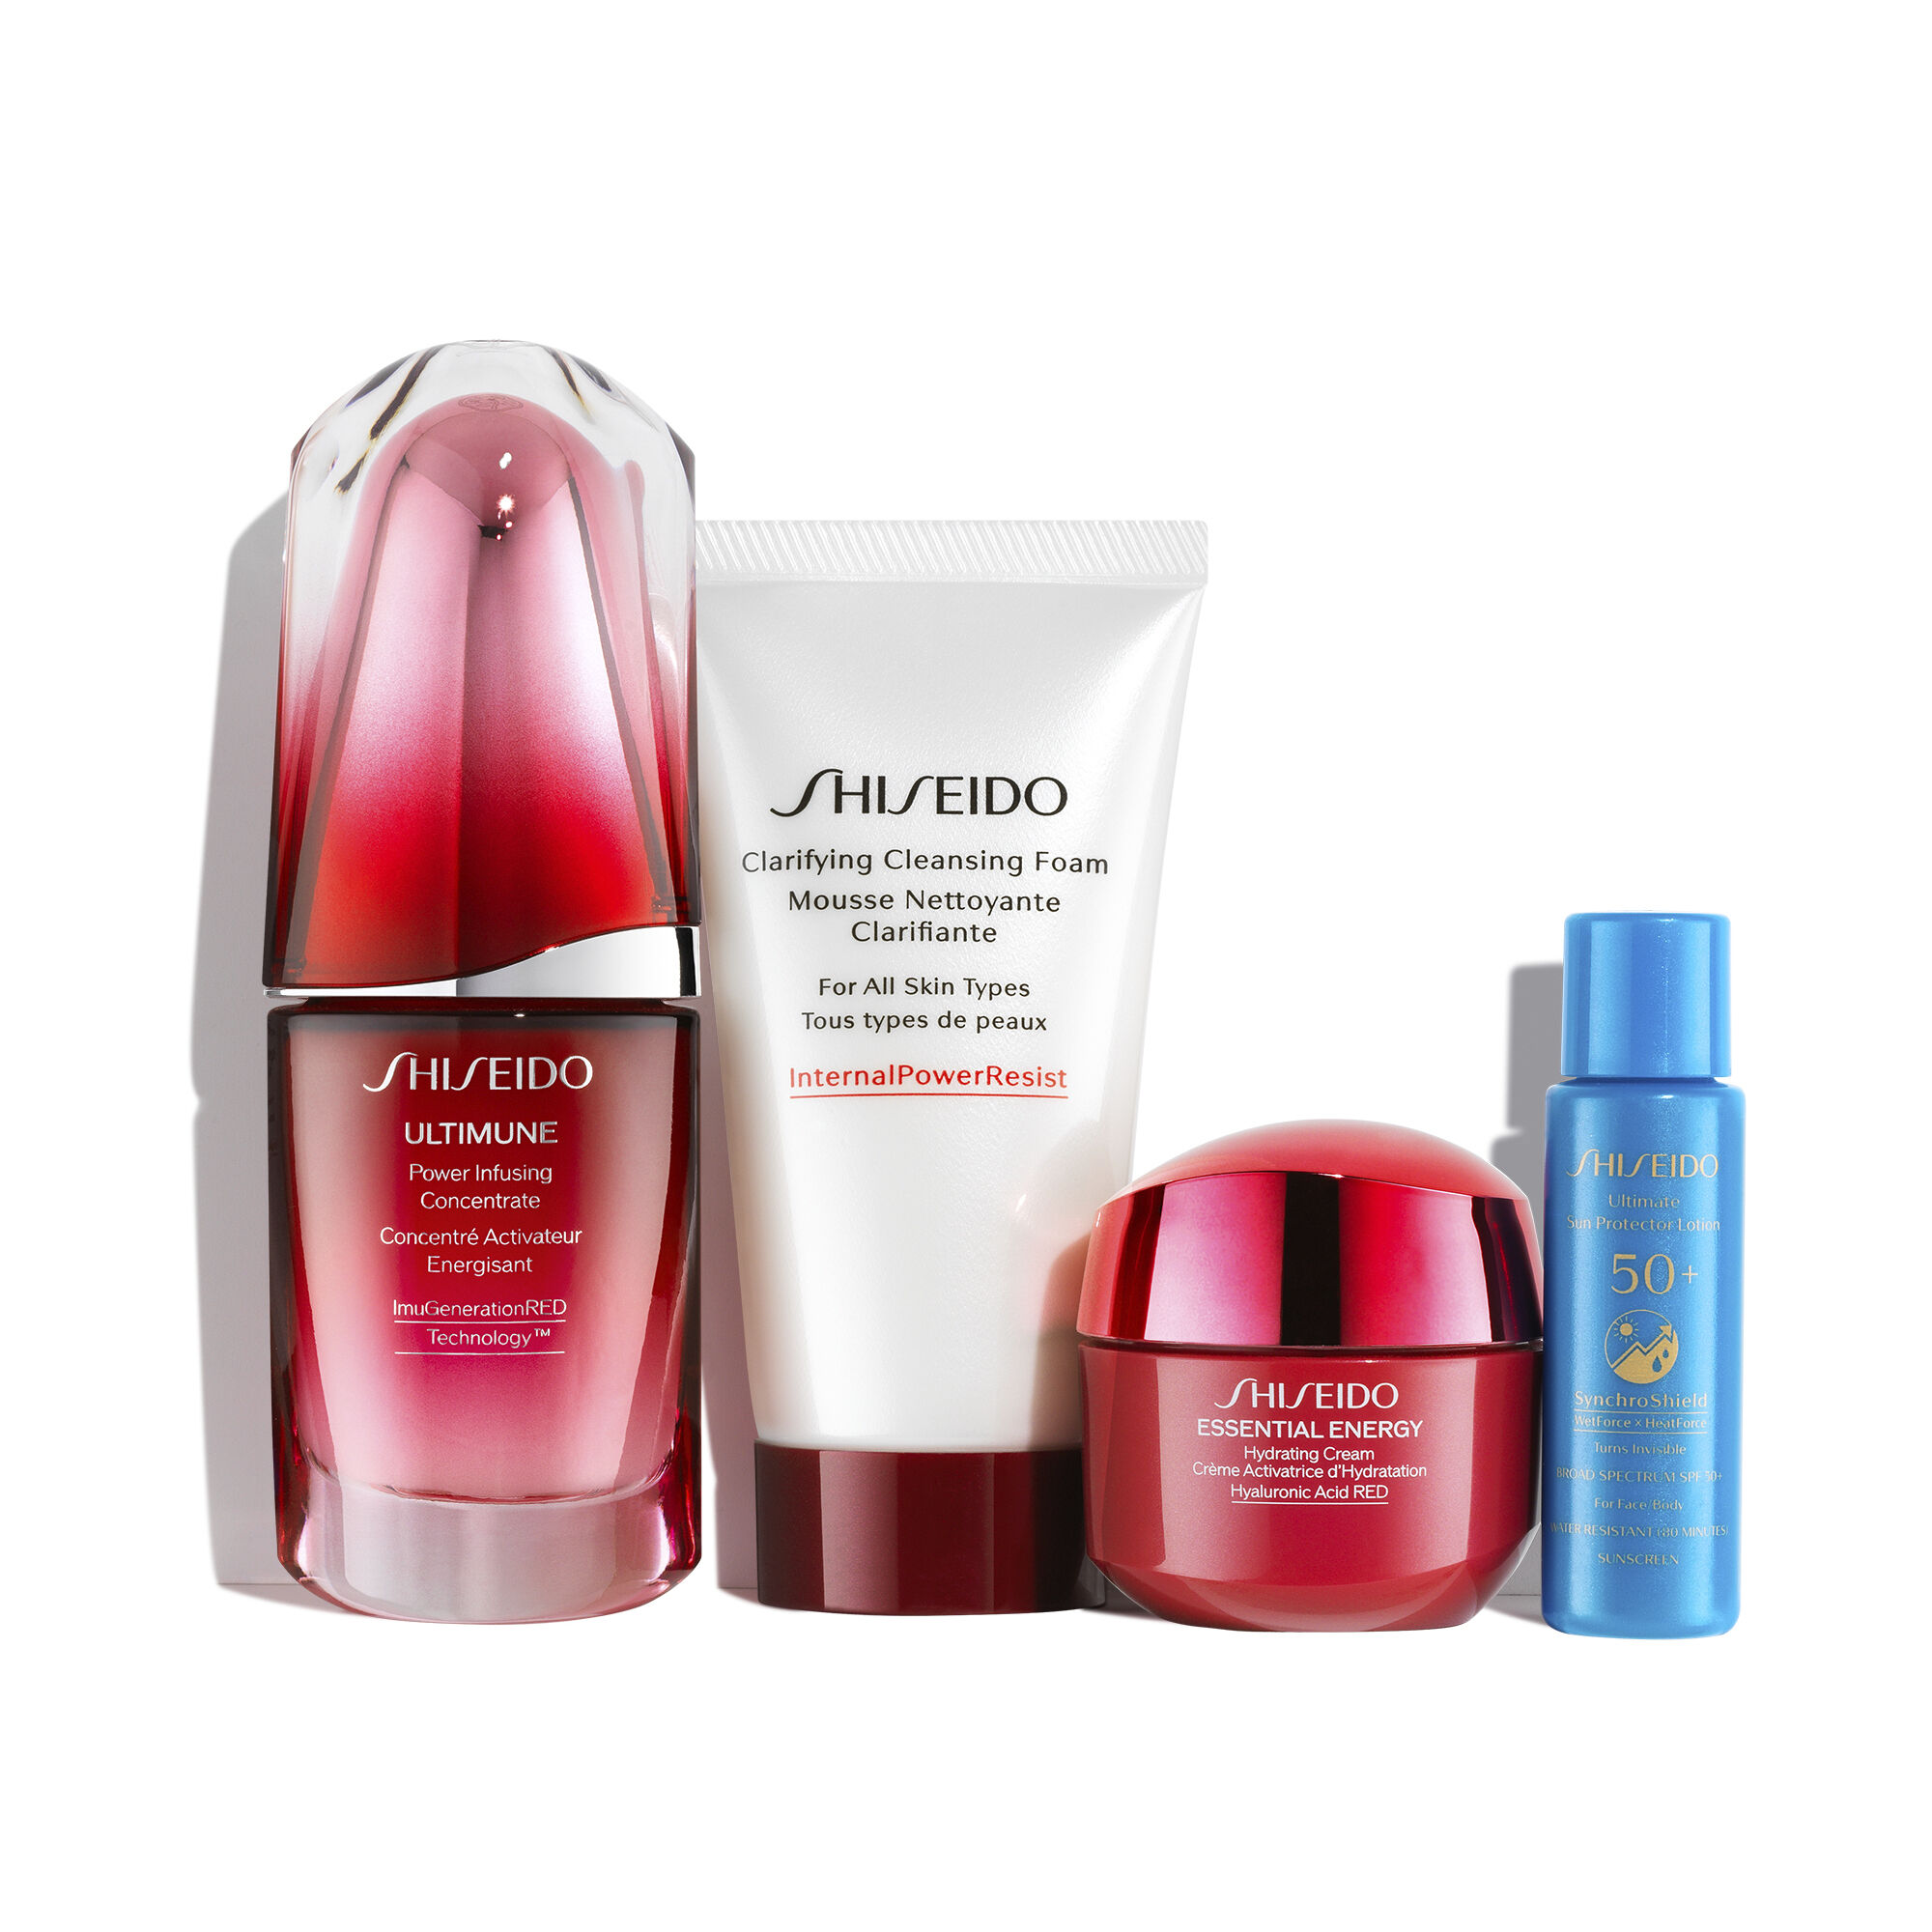 全てのアイテム - Shiseido セット＆コフレ 72834318 (SHISEIDO/スキンケア・基礎化粧品その他) - スキンケア・基礎化粧品